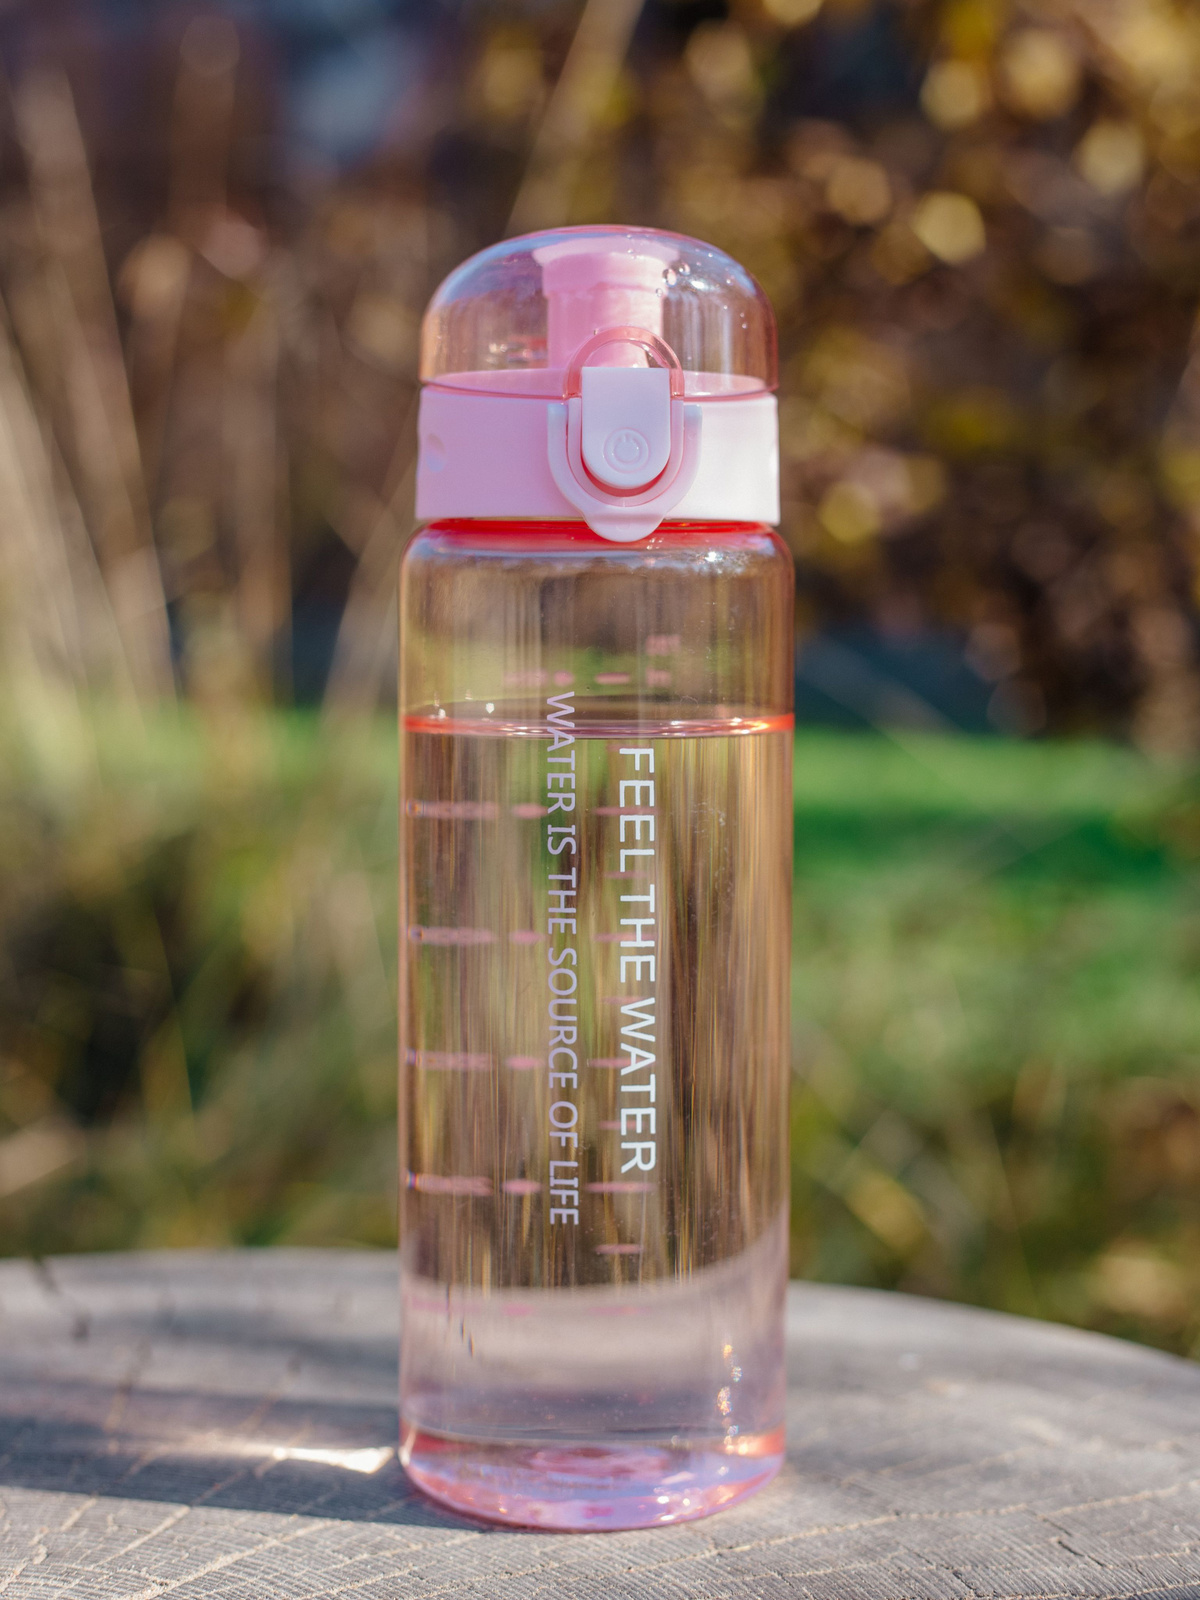     Пластиковая бутылка объемом 0,78 литра. Остановив свой выбор на этой модели, Вы приобретете эстетичную, надежную, удобную и качественную бутылку для воды, особенно если Вы активный человек и любите заниматься спортом. 